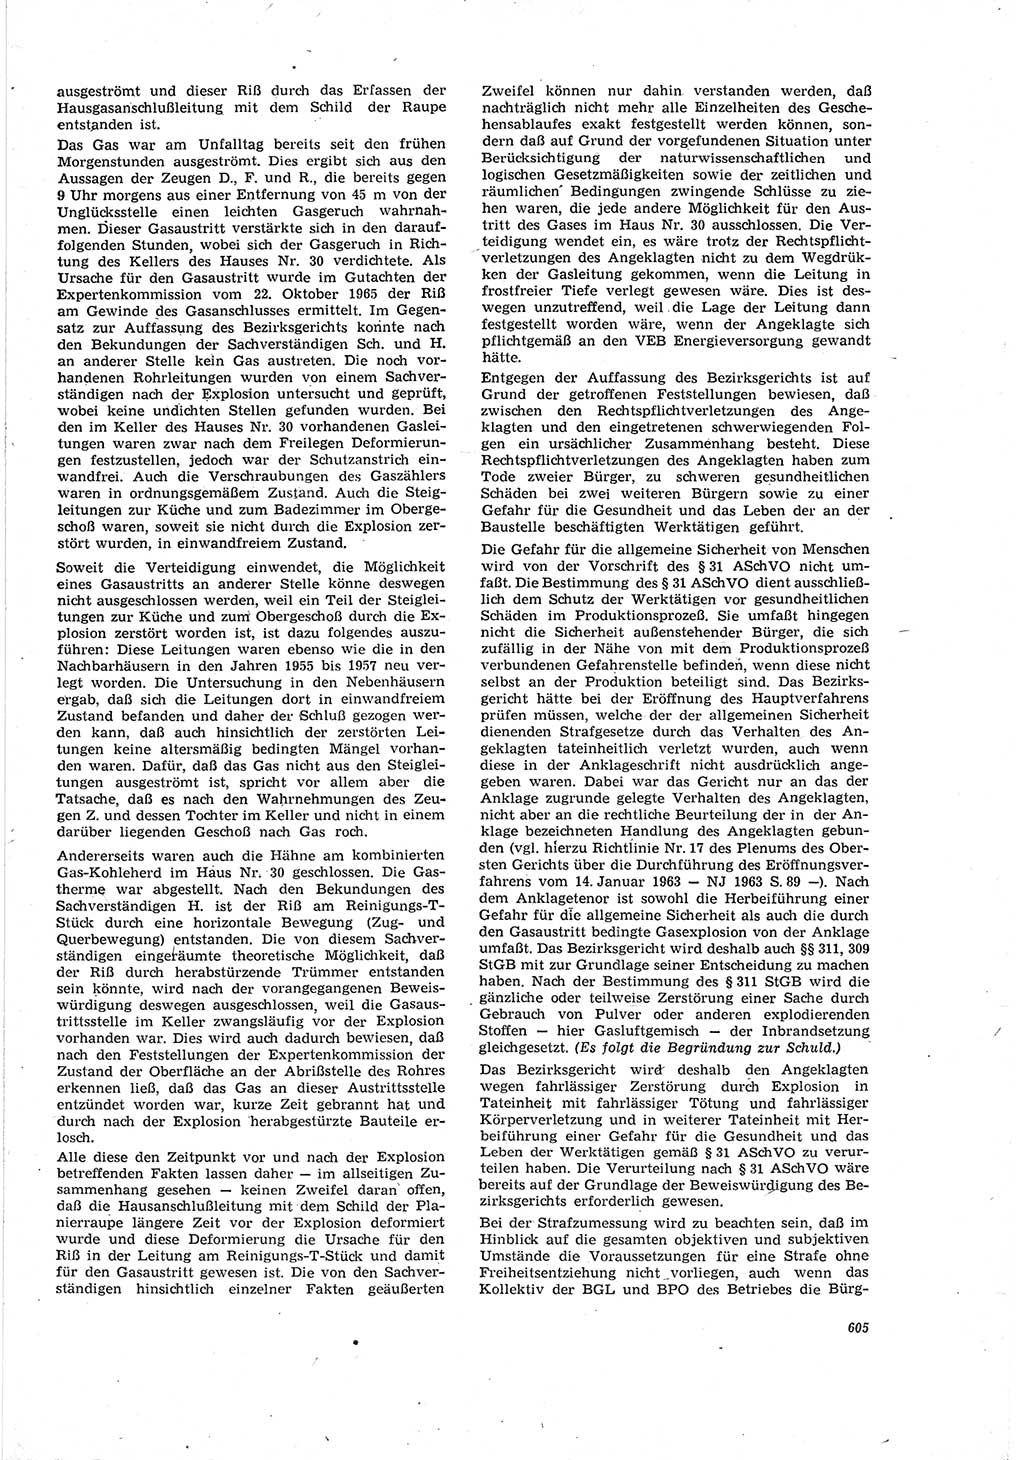 Neue Justiz (NJ), Zeitschrift für Recht und Rechtswissenschaft [Deutsche Demokratische Republik (DDR)], 20. Jahrgang 1966, Seite 605 (NJ DDR 1966, S. 605)